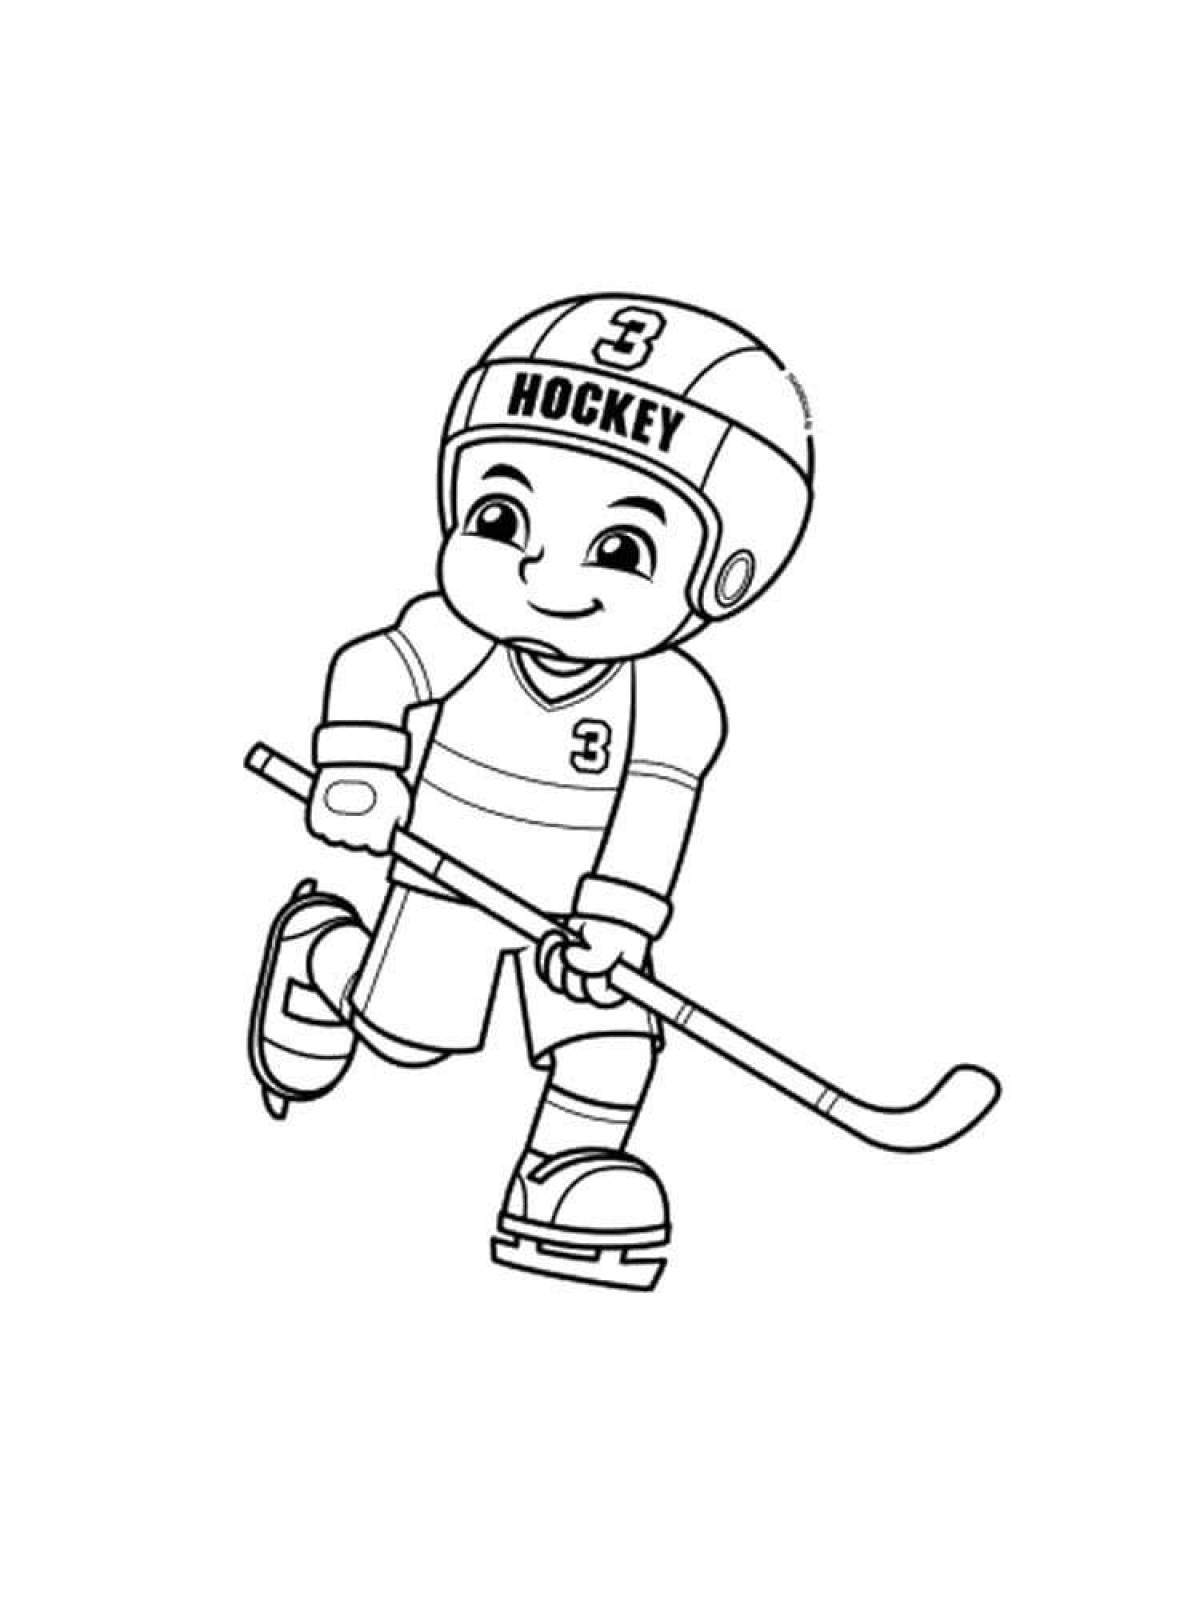 Увлекательная раскраска хоккеист для детей